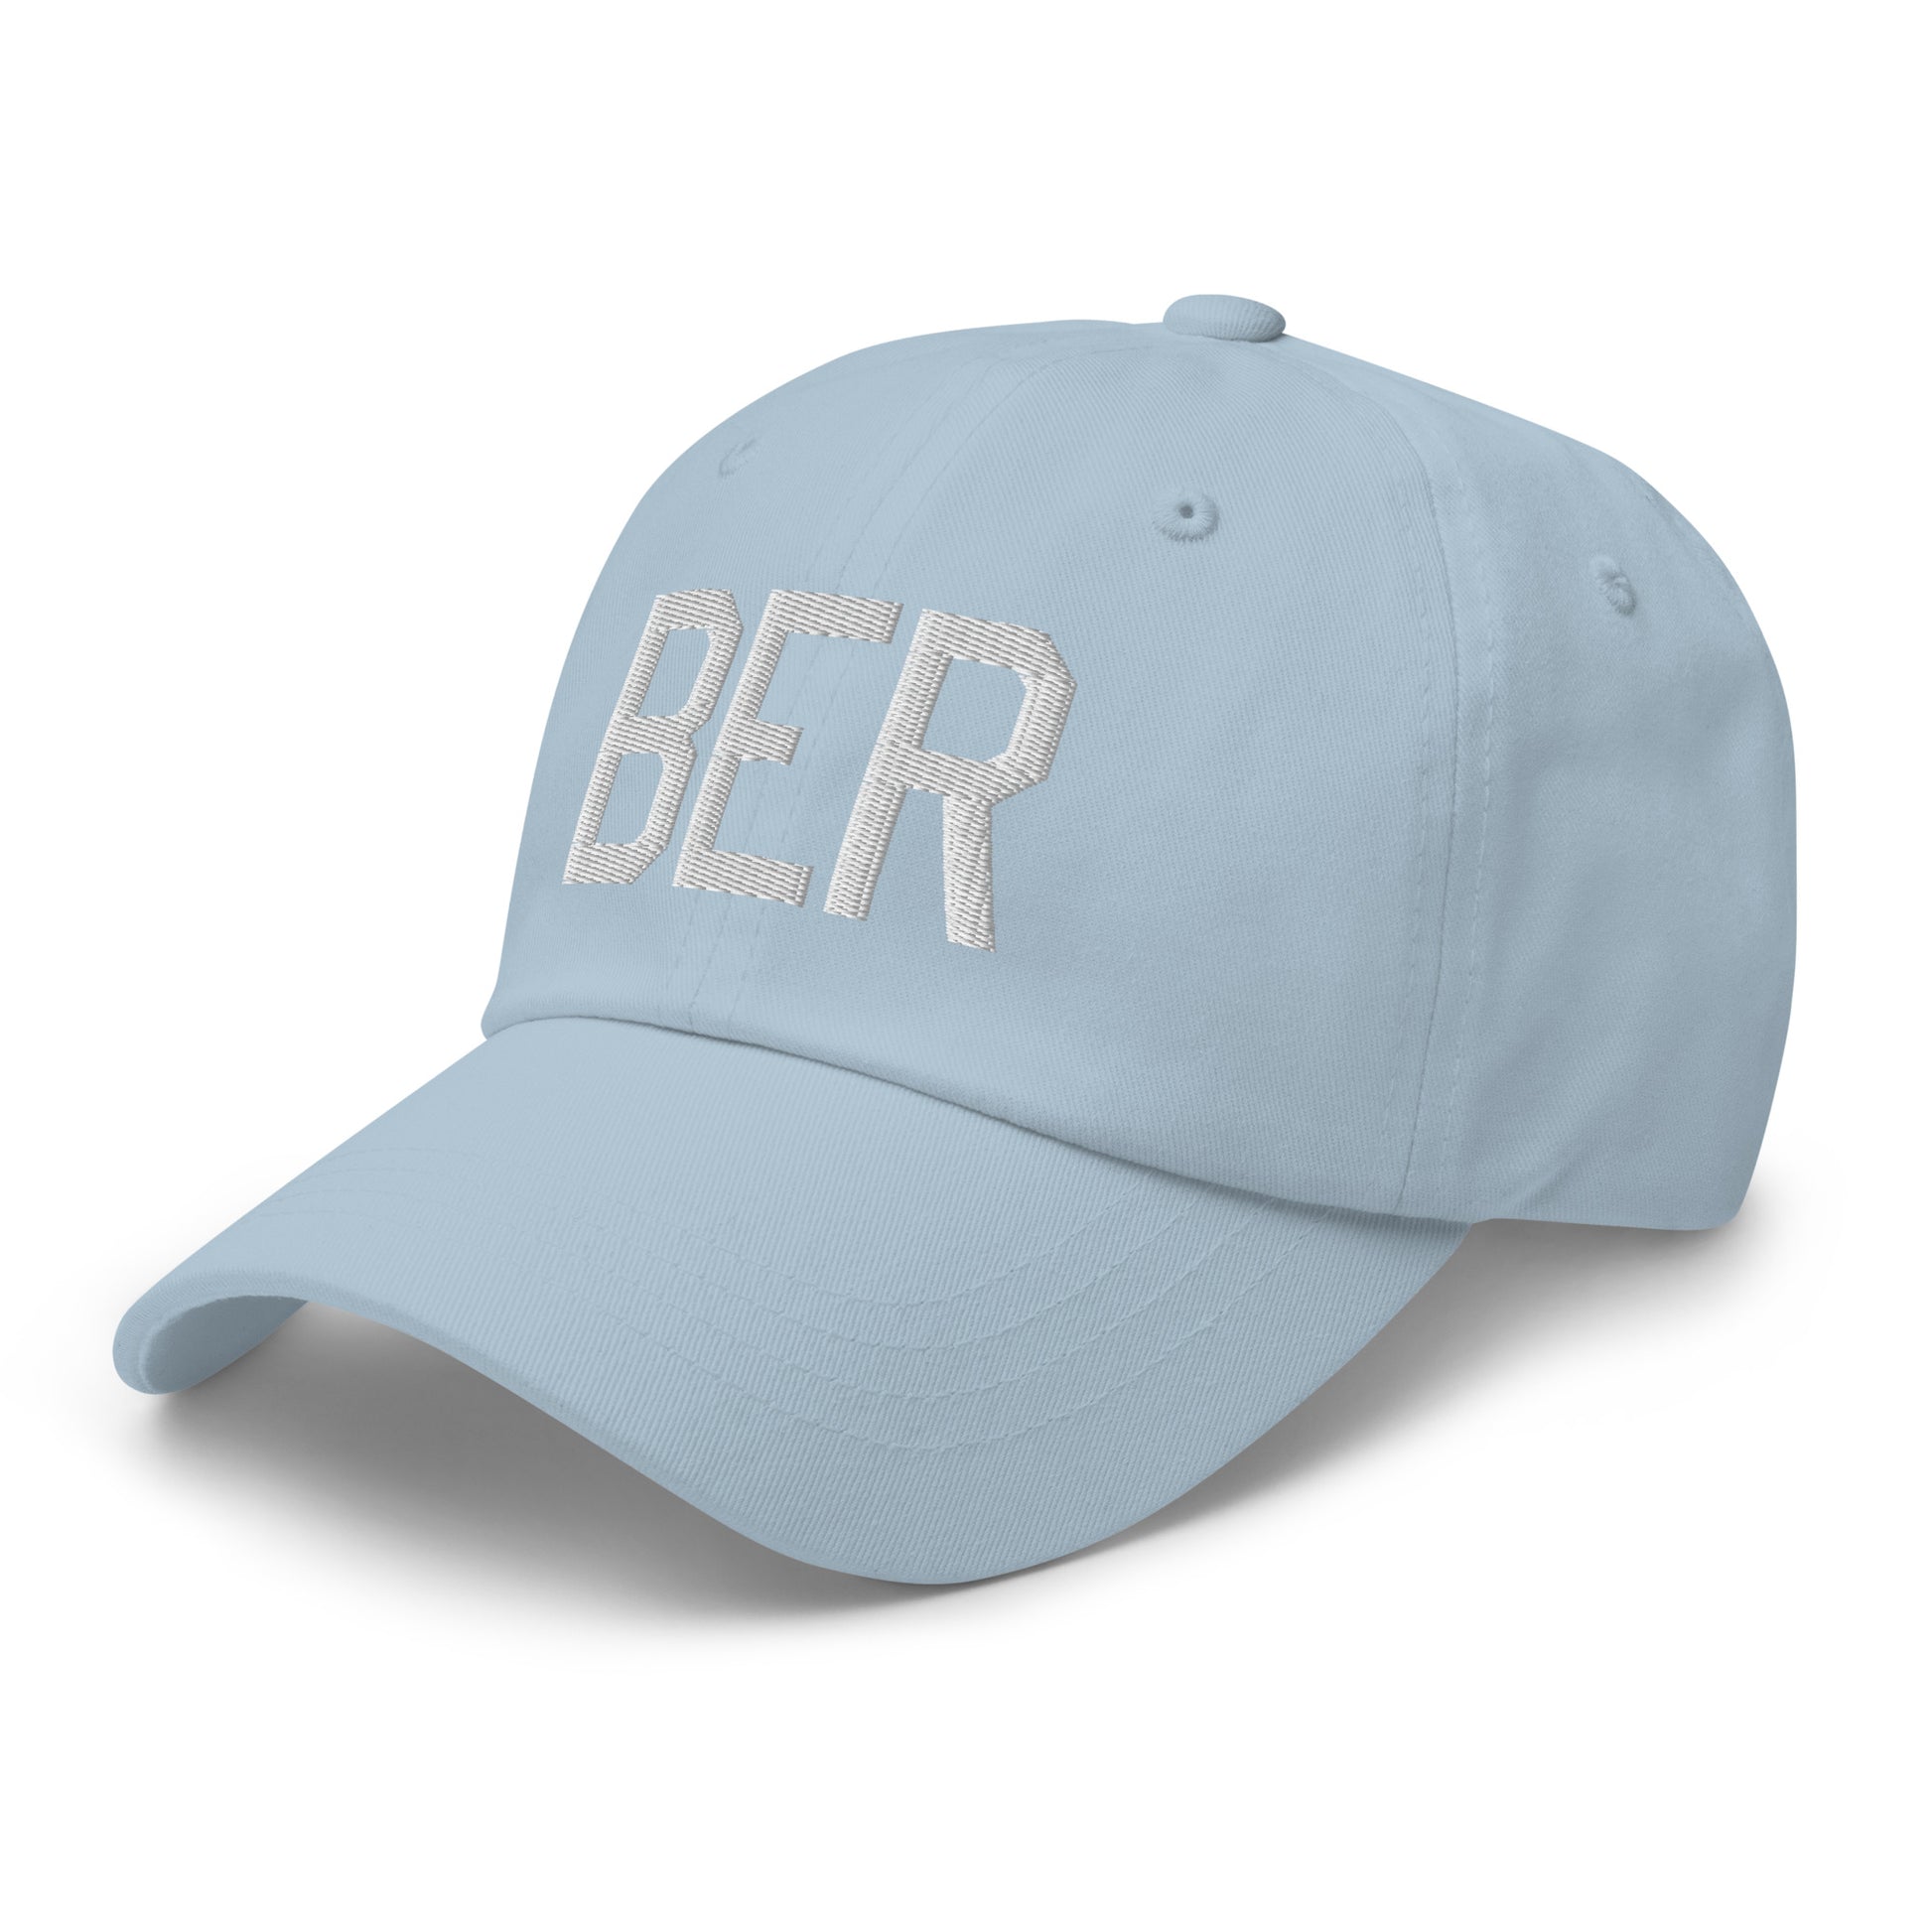 Airport Code Baseball Cap - White • BER Berlin • YHM Designs - Image 30